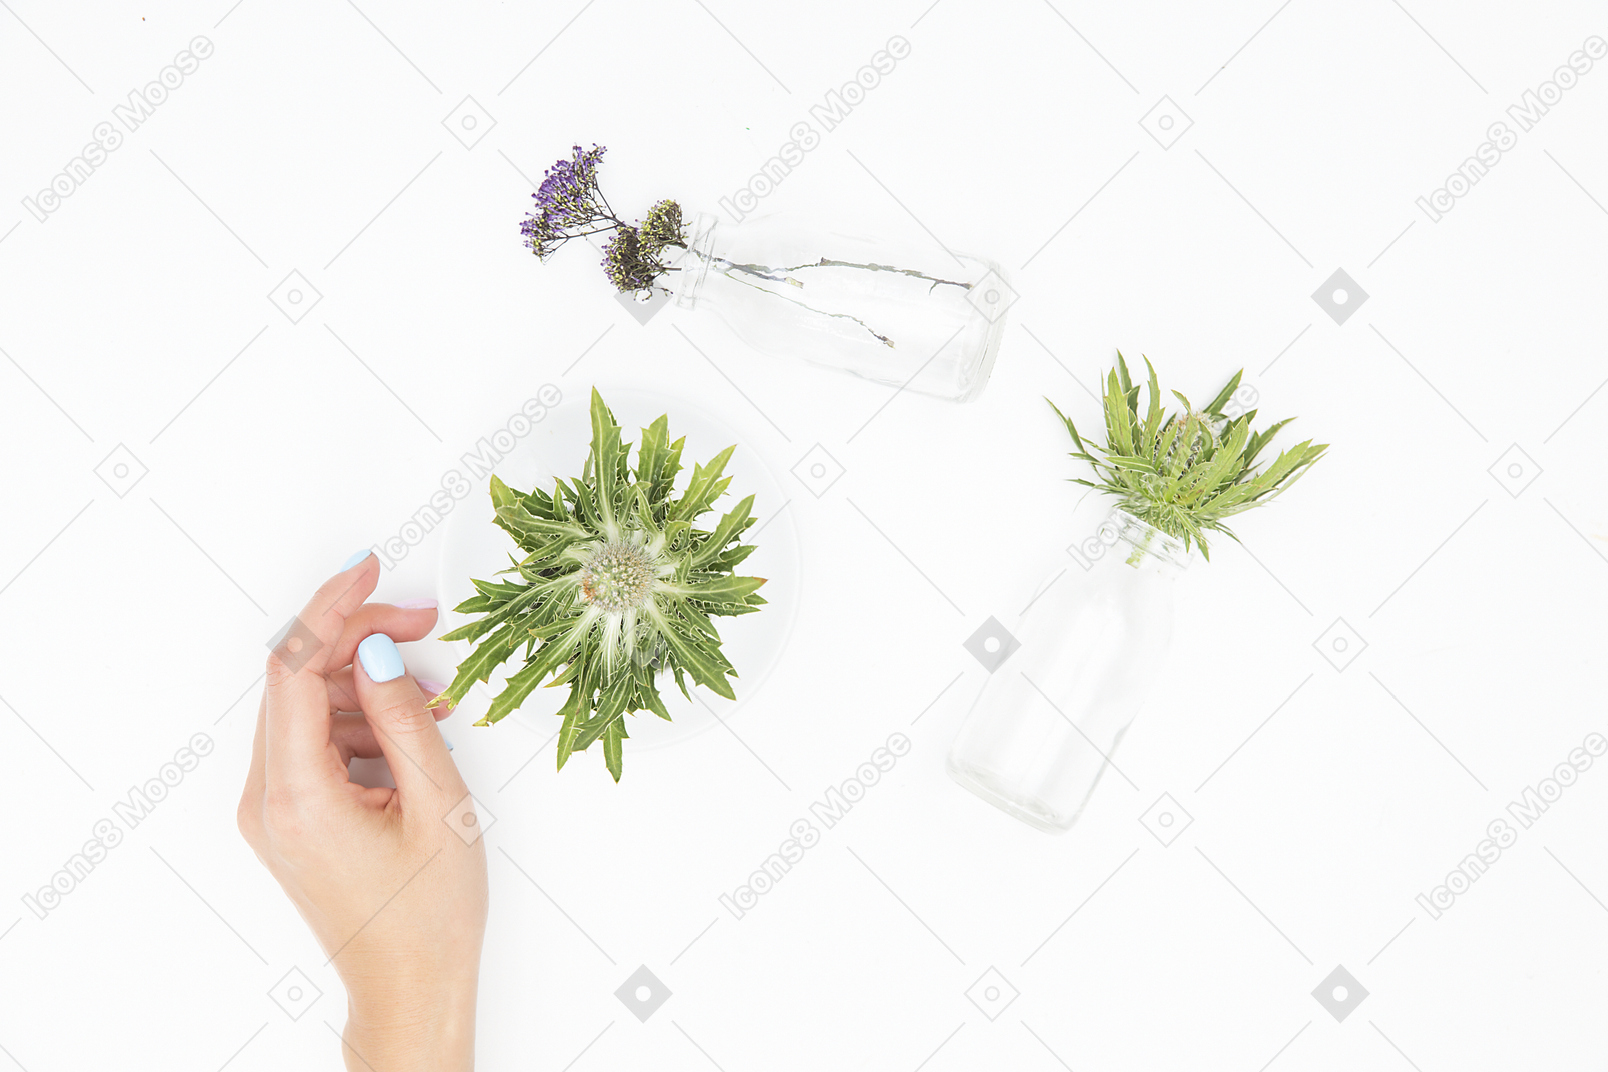 さまざまなガラスのオブジェクトと緑の植物の横にある女性の手